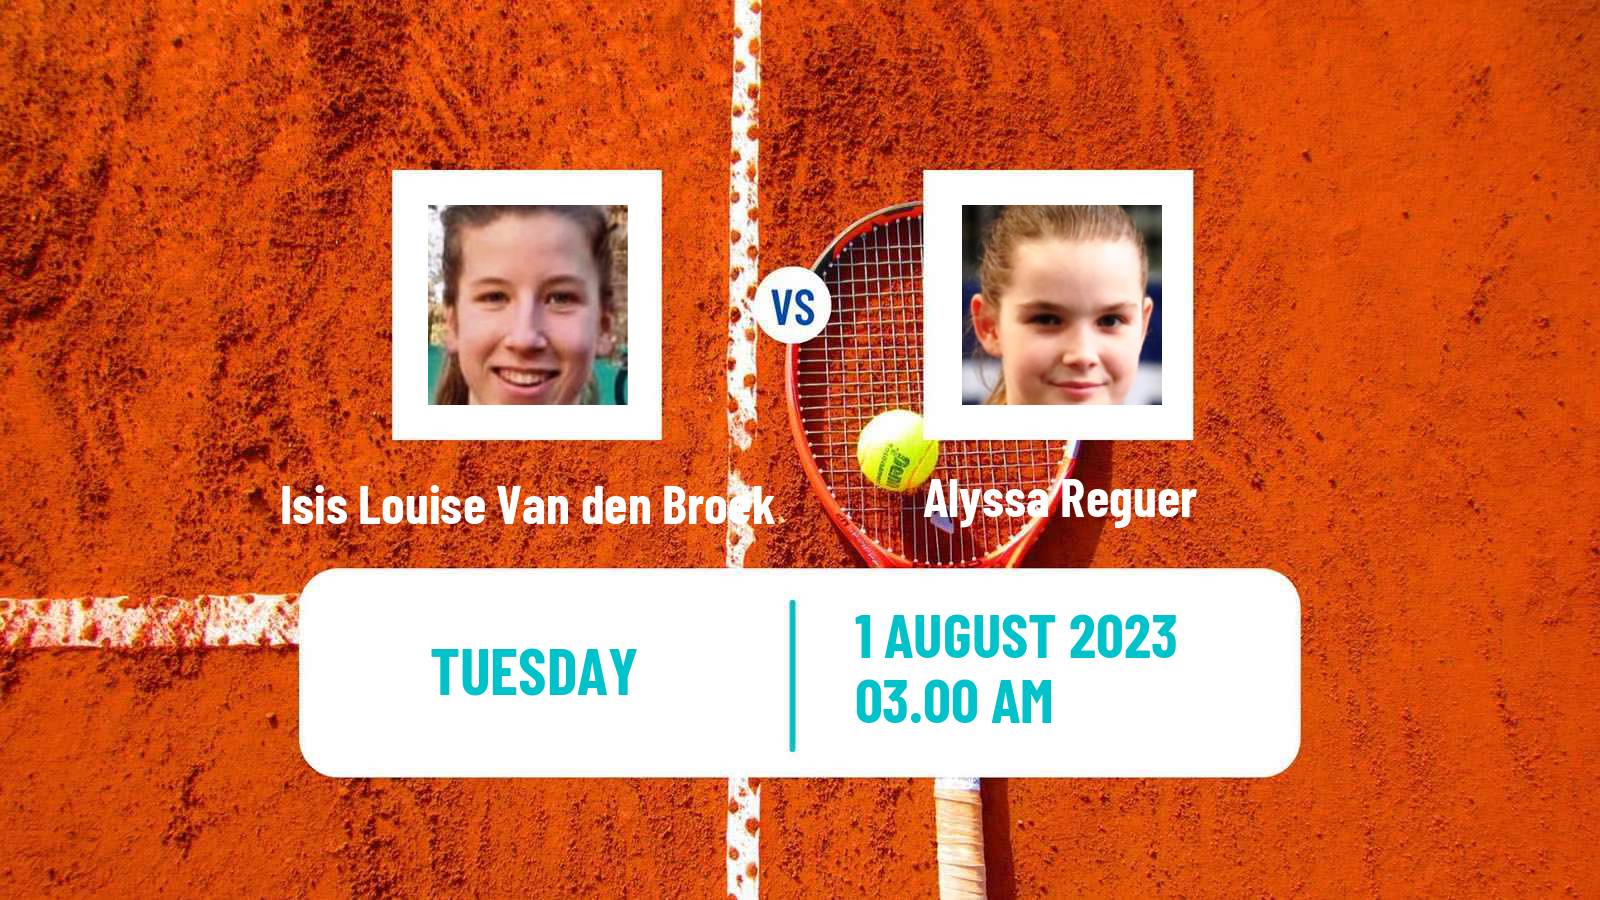 Tennis ITF W15 Eindhoven Women Isis Louise Van den Broek - Alyssa Reguer